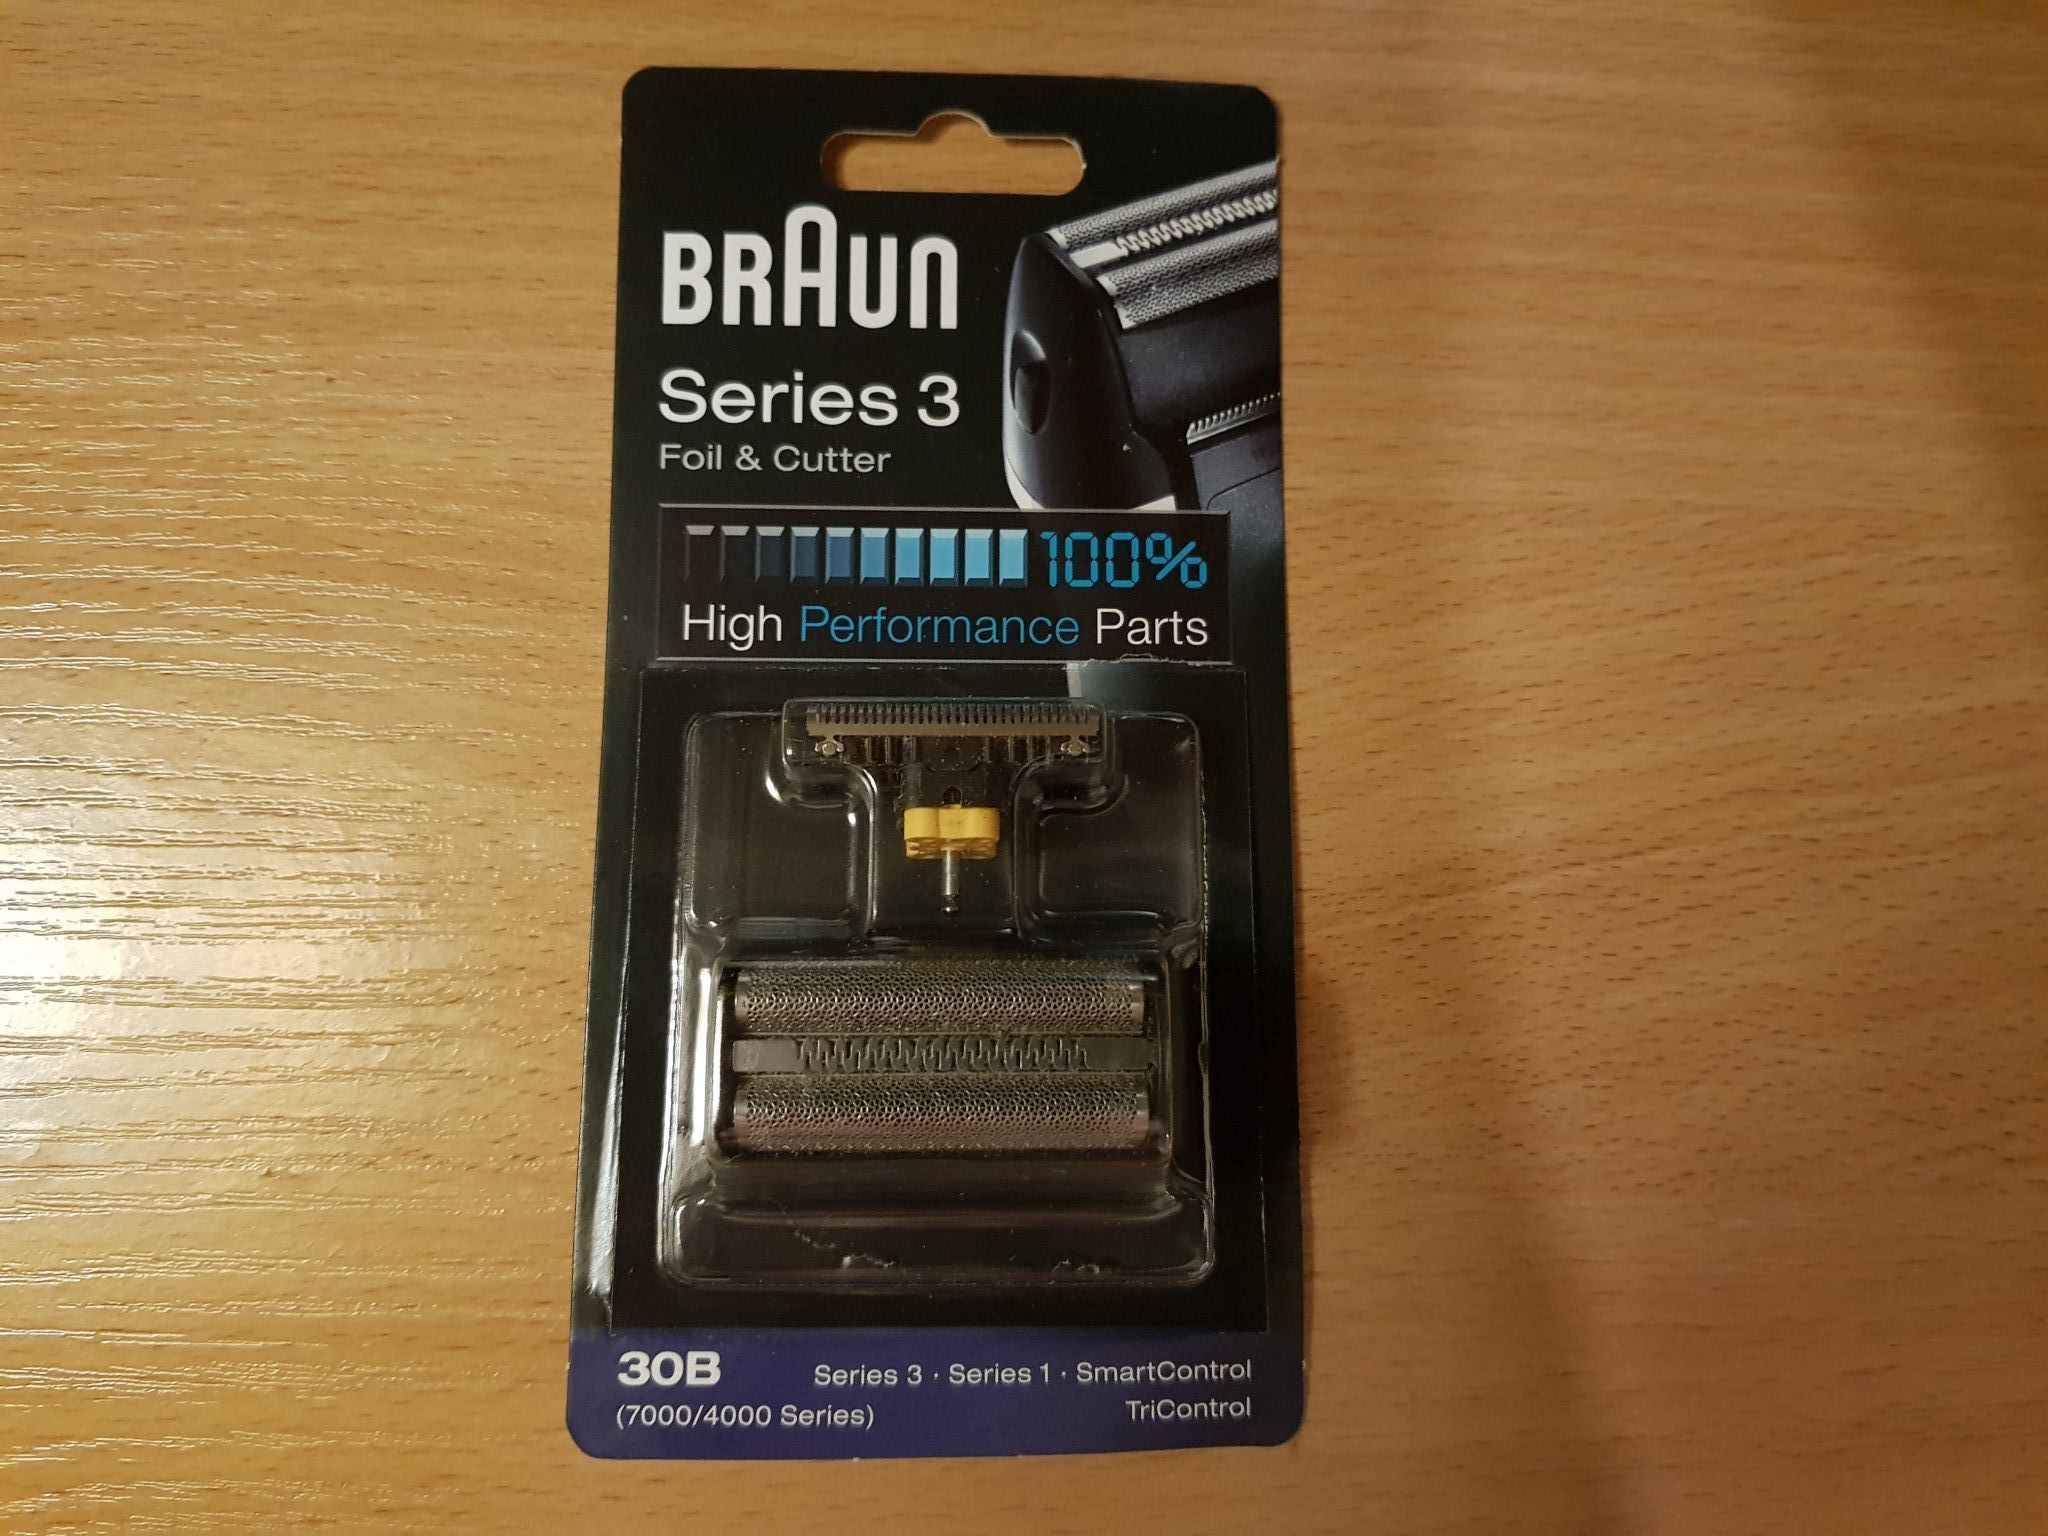 Сетка и режущий блок 30B для электробритв Braun Series 3 - купить в  официальном магазине Braun